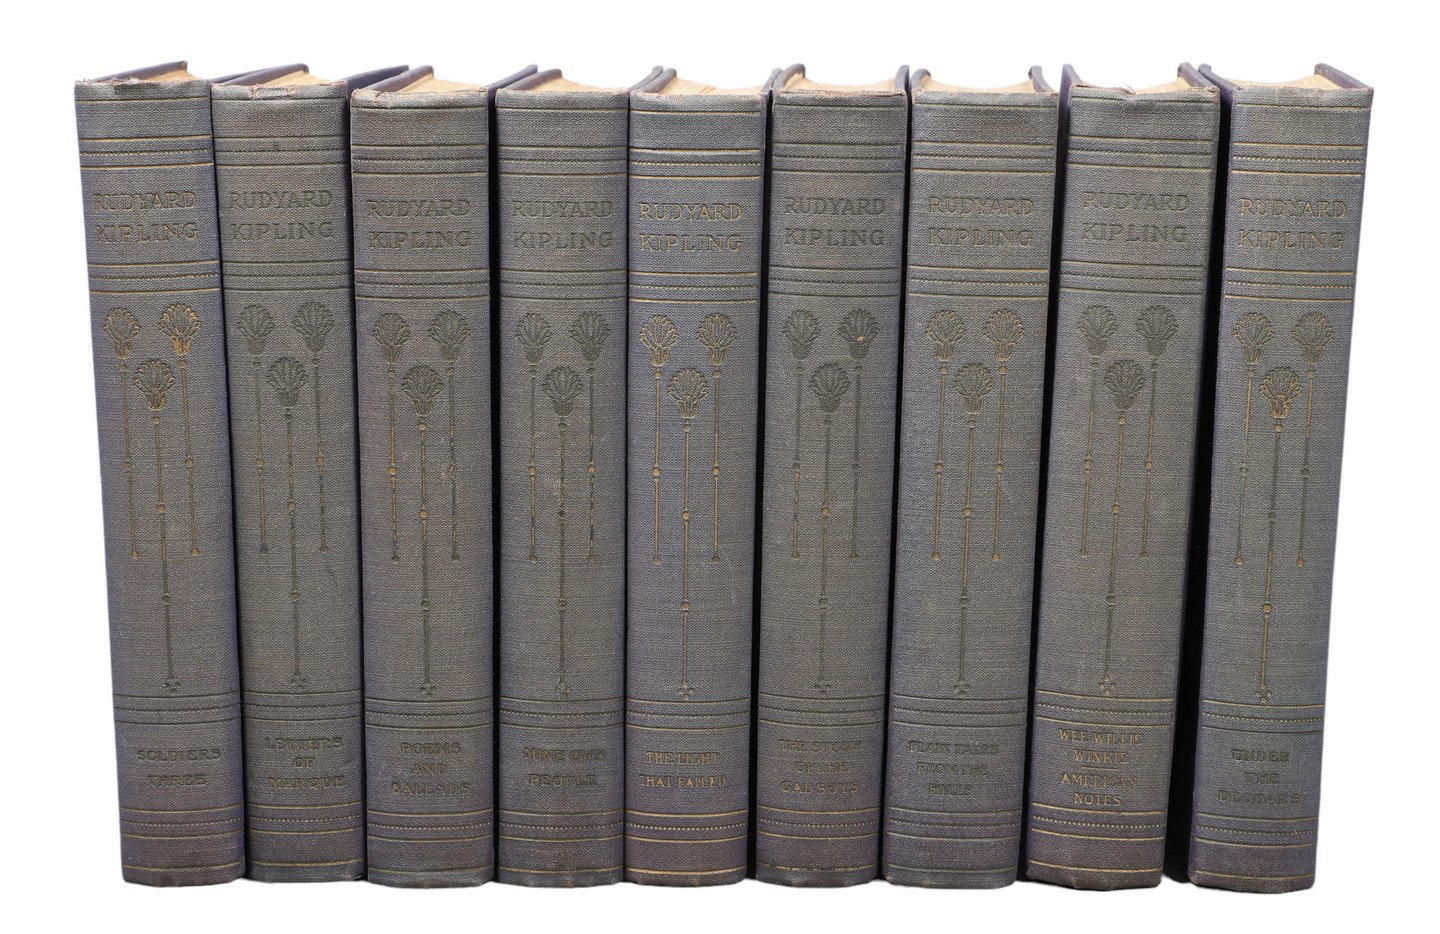 Nine volumes of a set of Rudyard